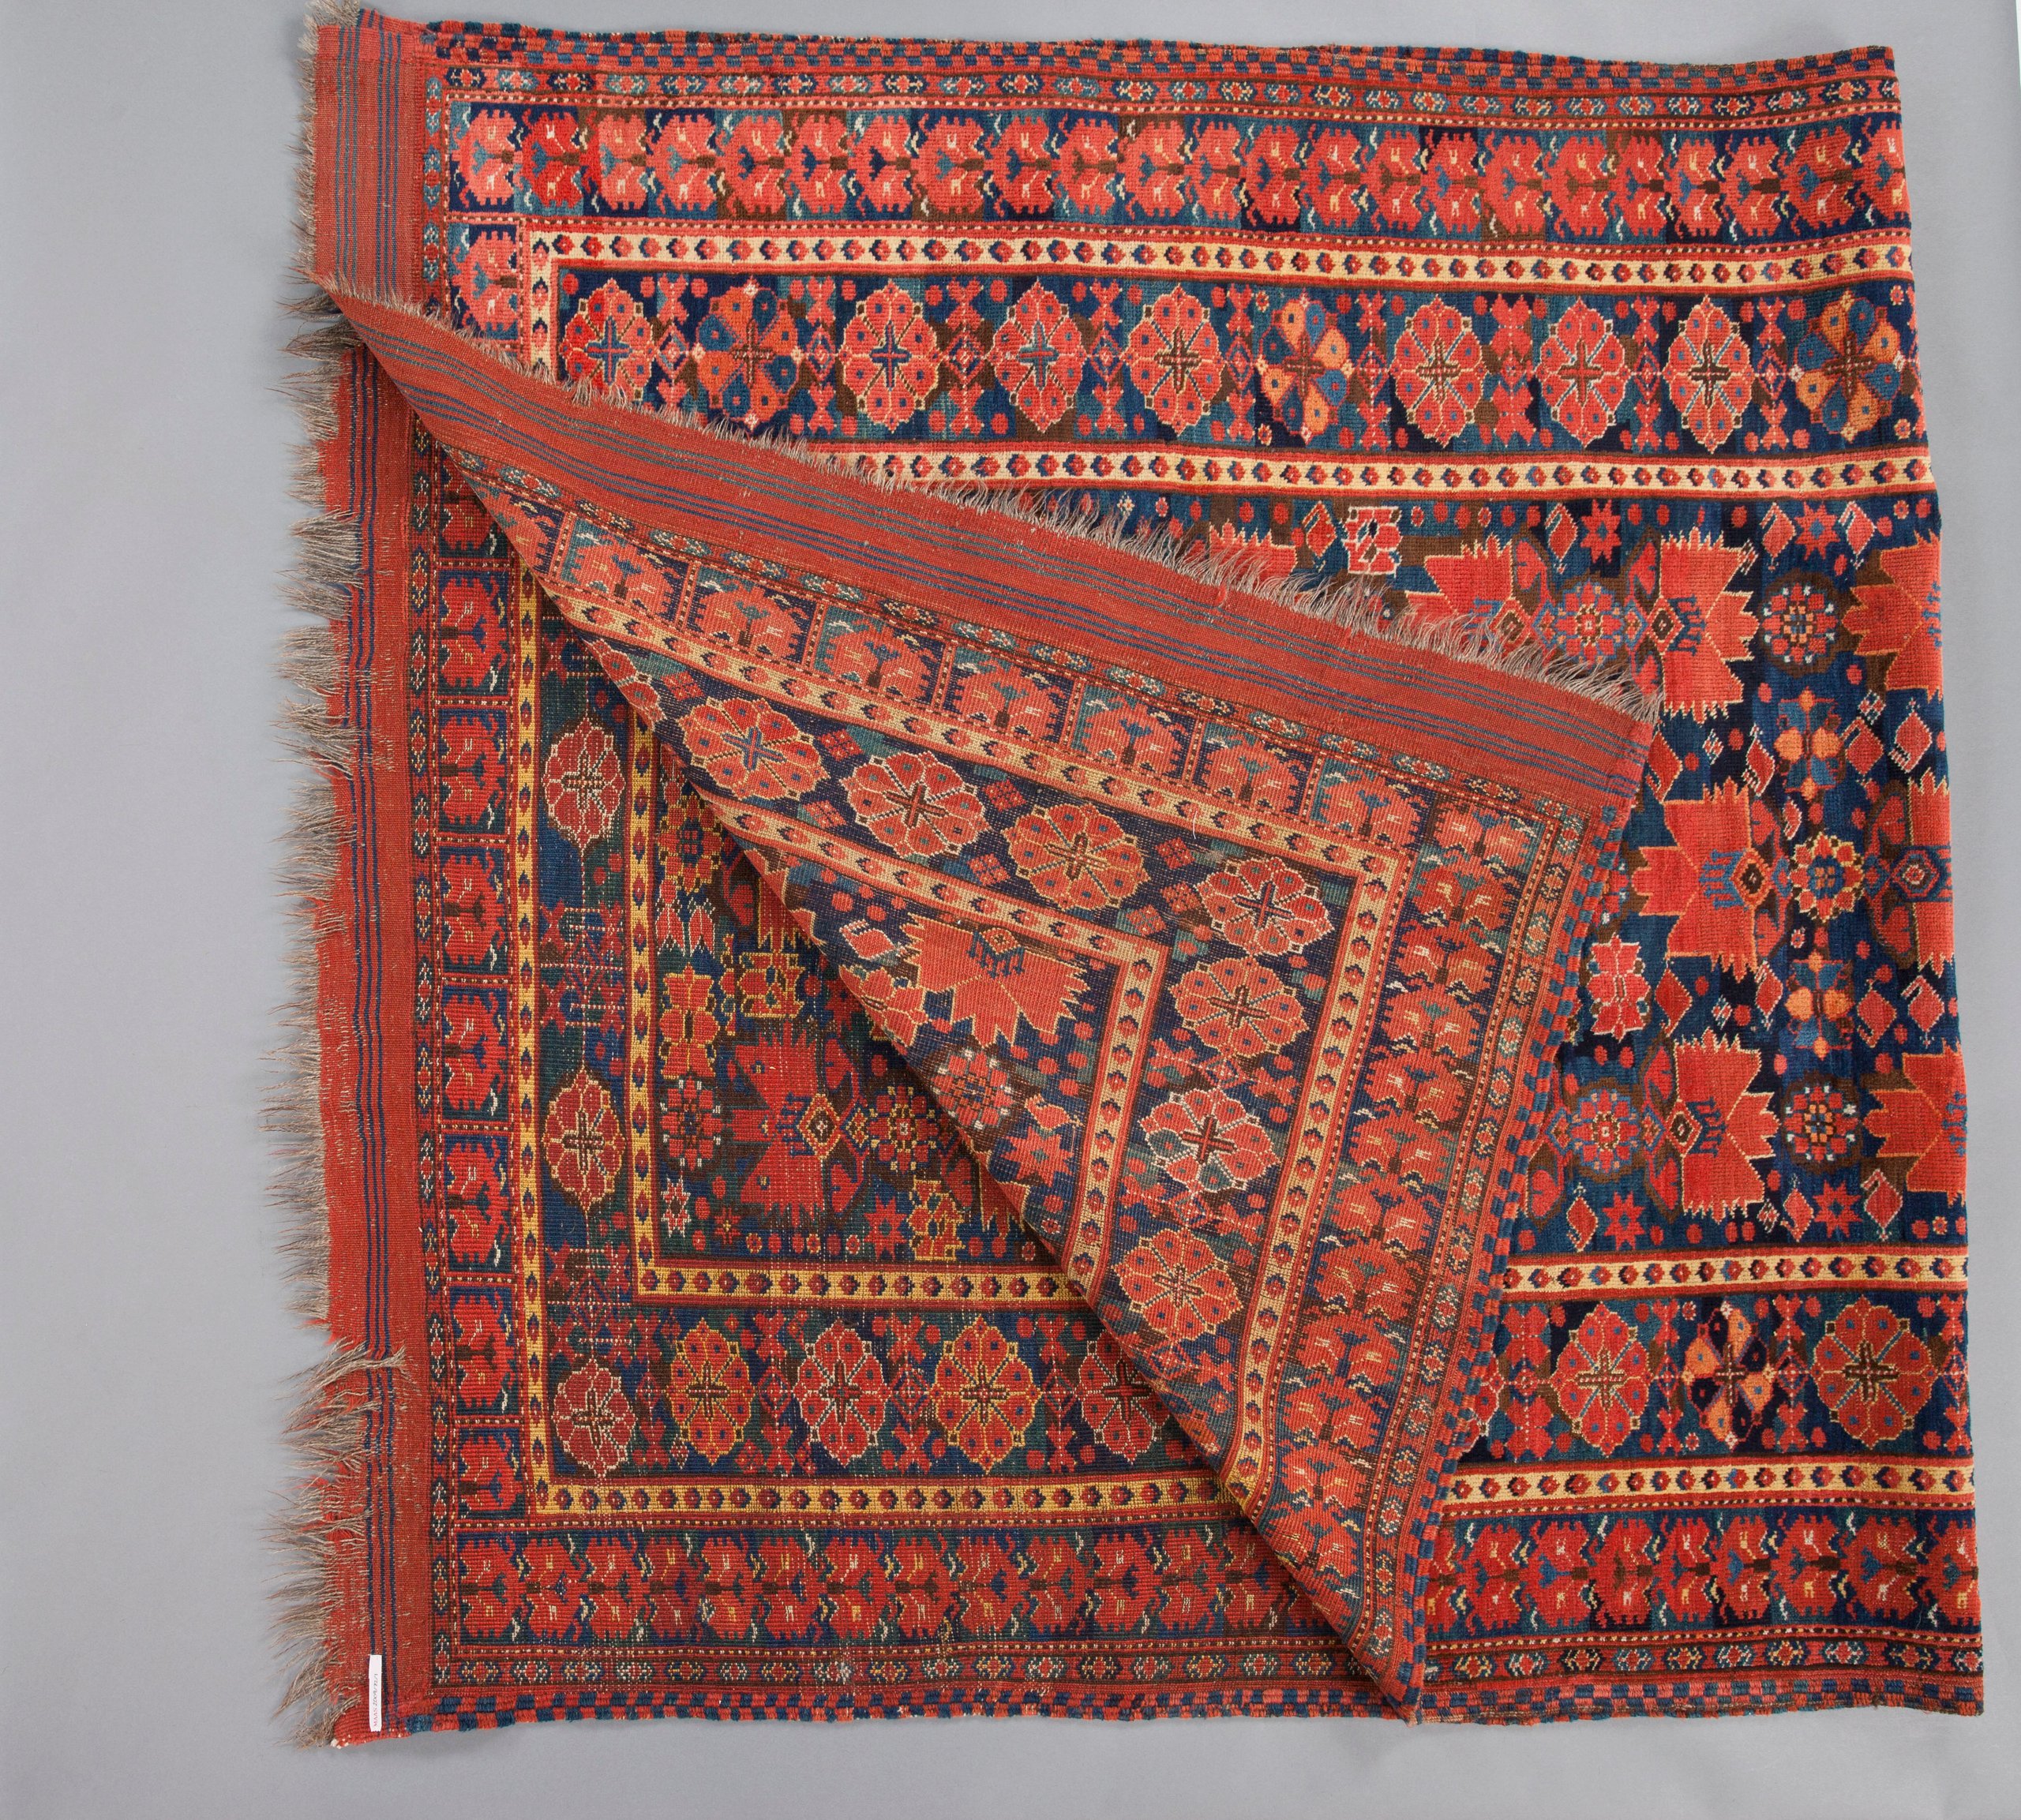 Turkmen Beshir carpet from Central Asia